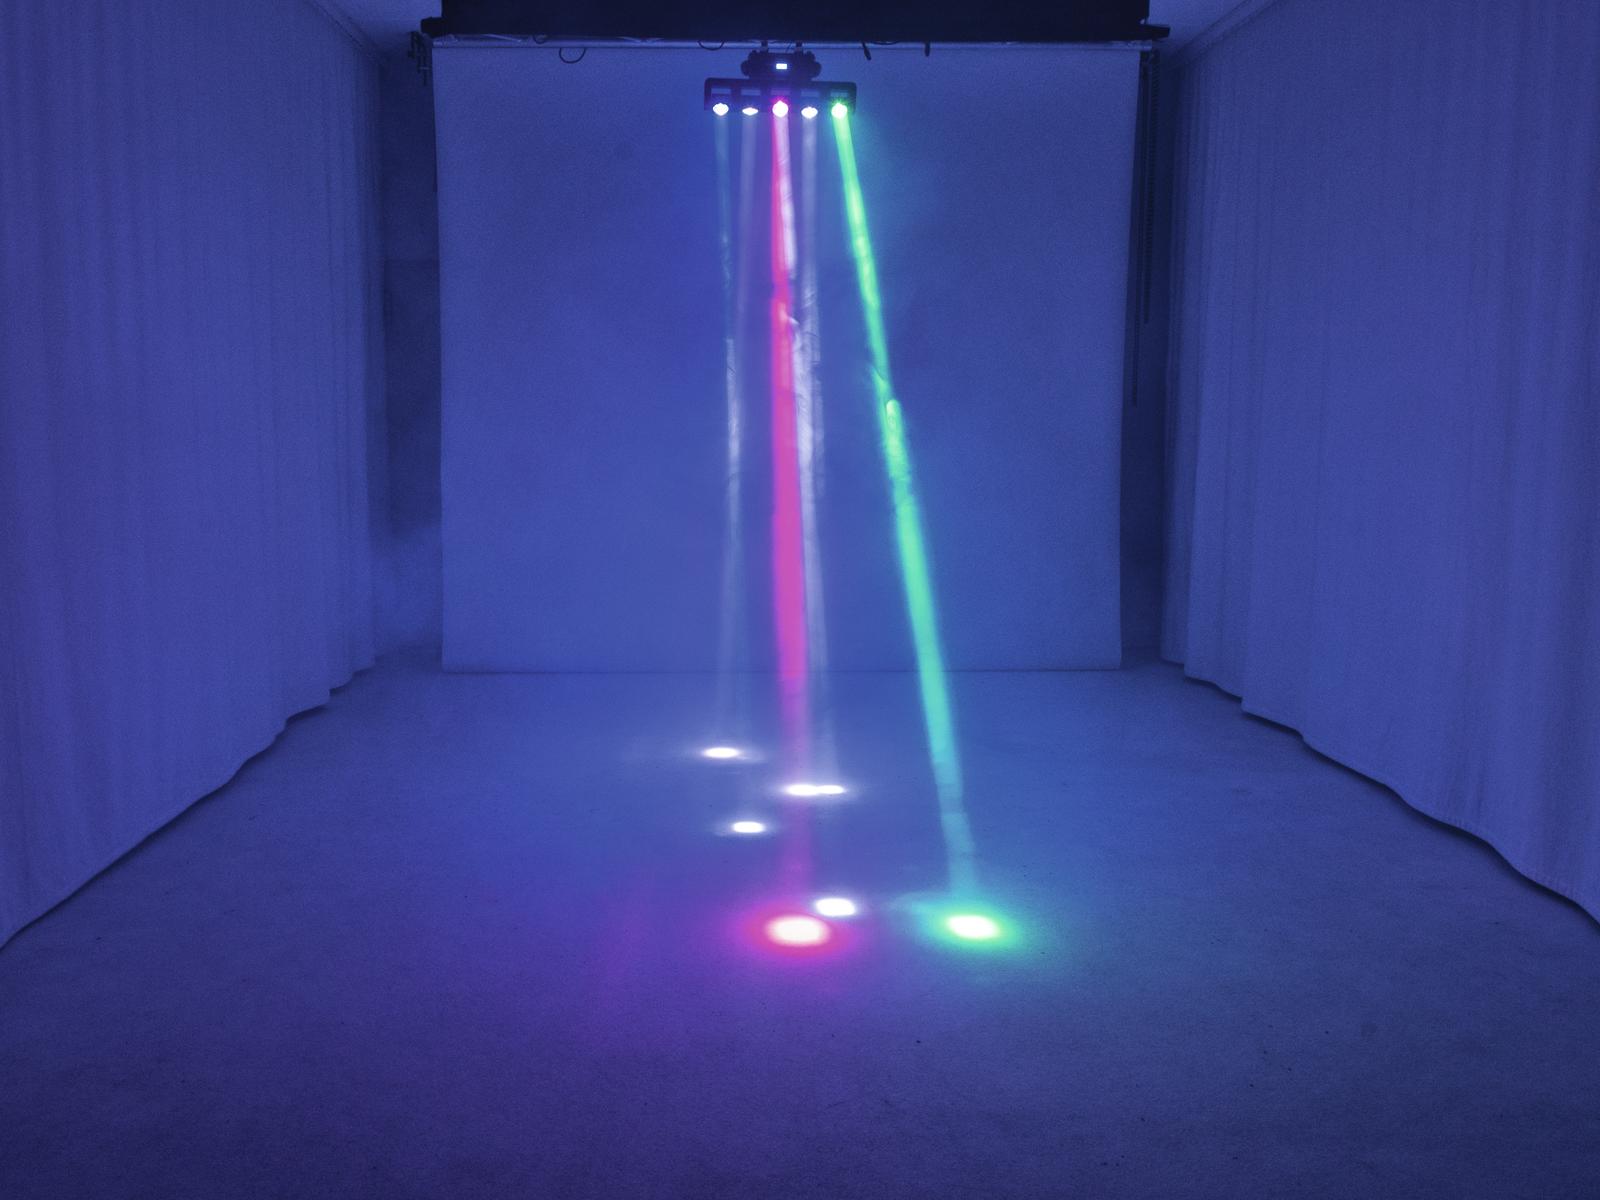 Party-Lichteffekt